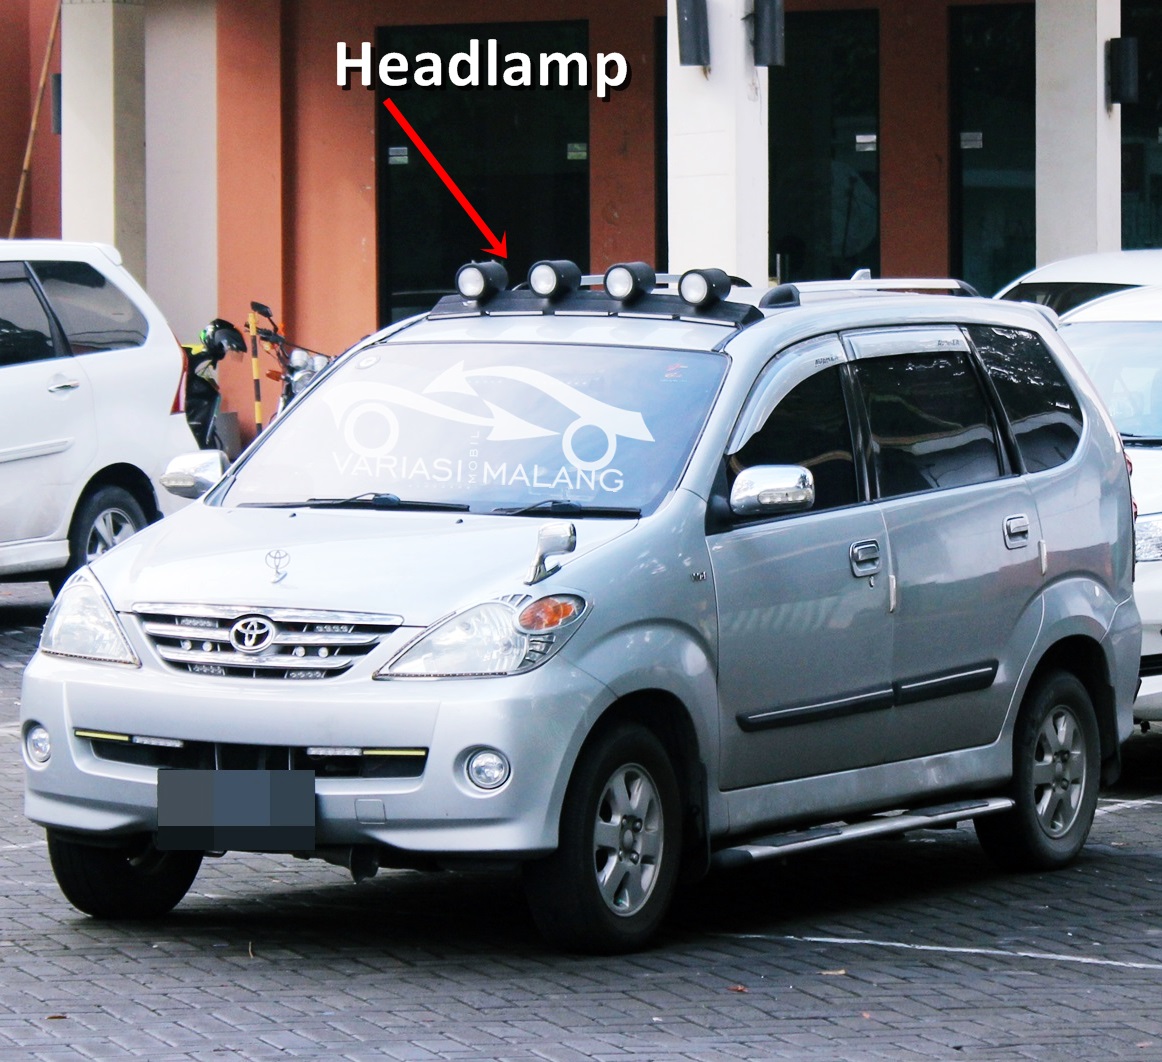 Jual Roof Lamp Head Lamp Untuk Mobil Avanza Xenia Malang Pusat